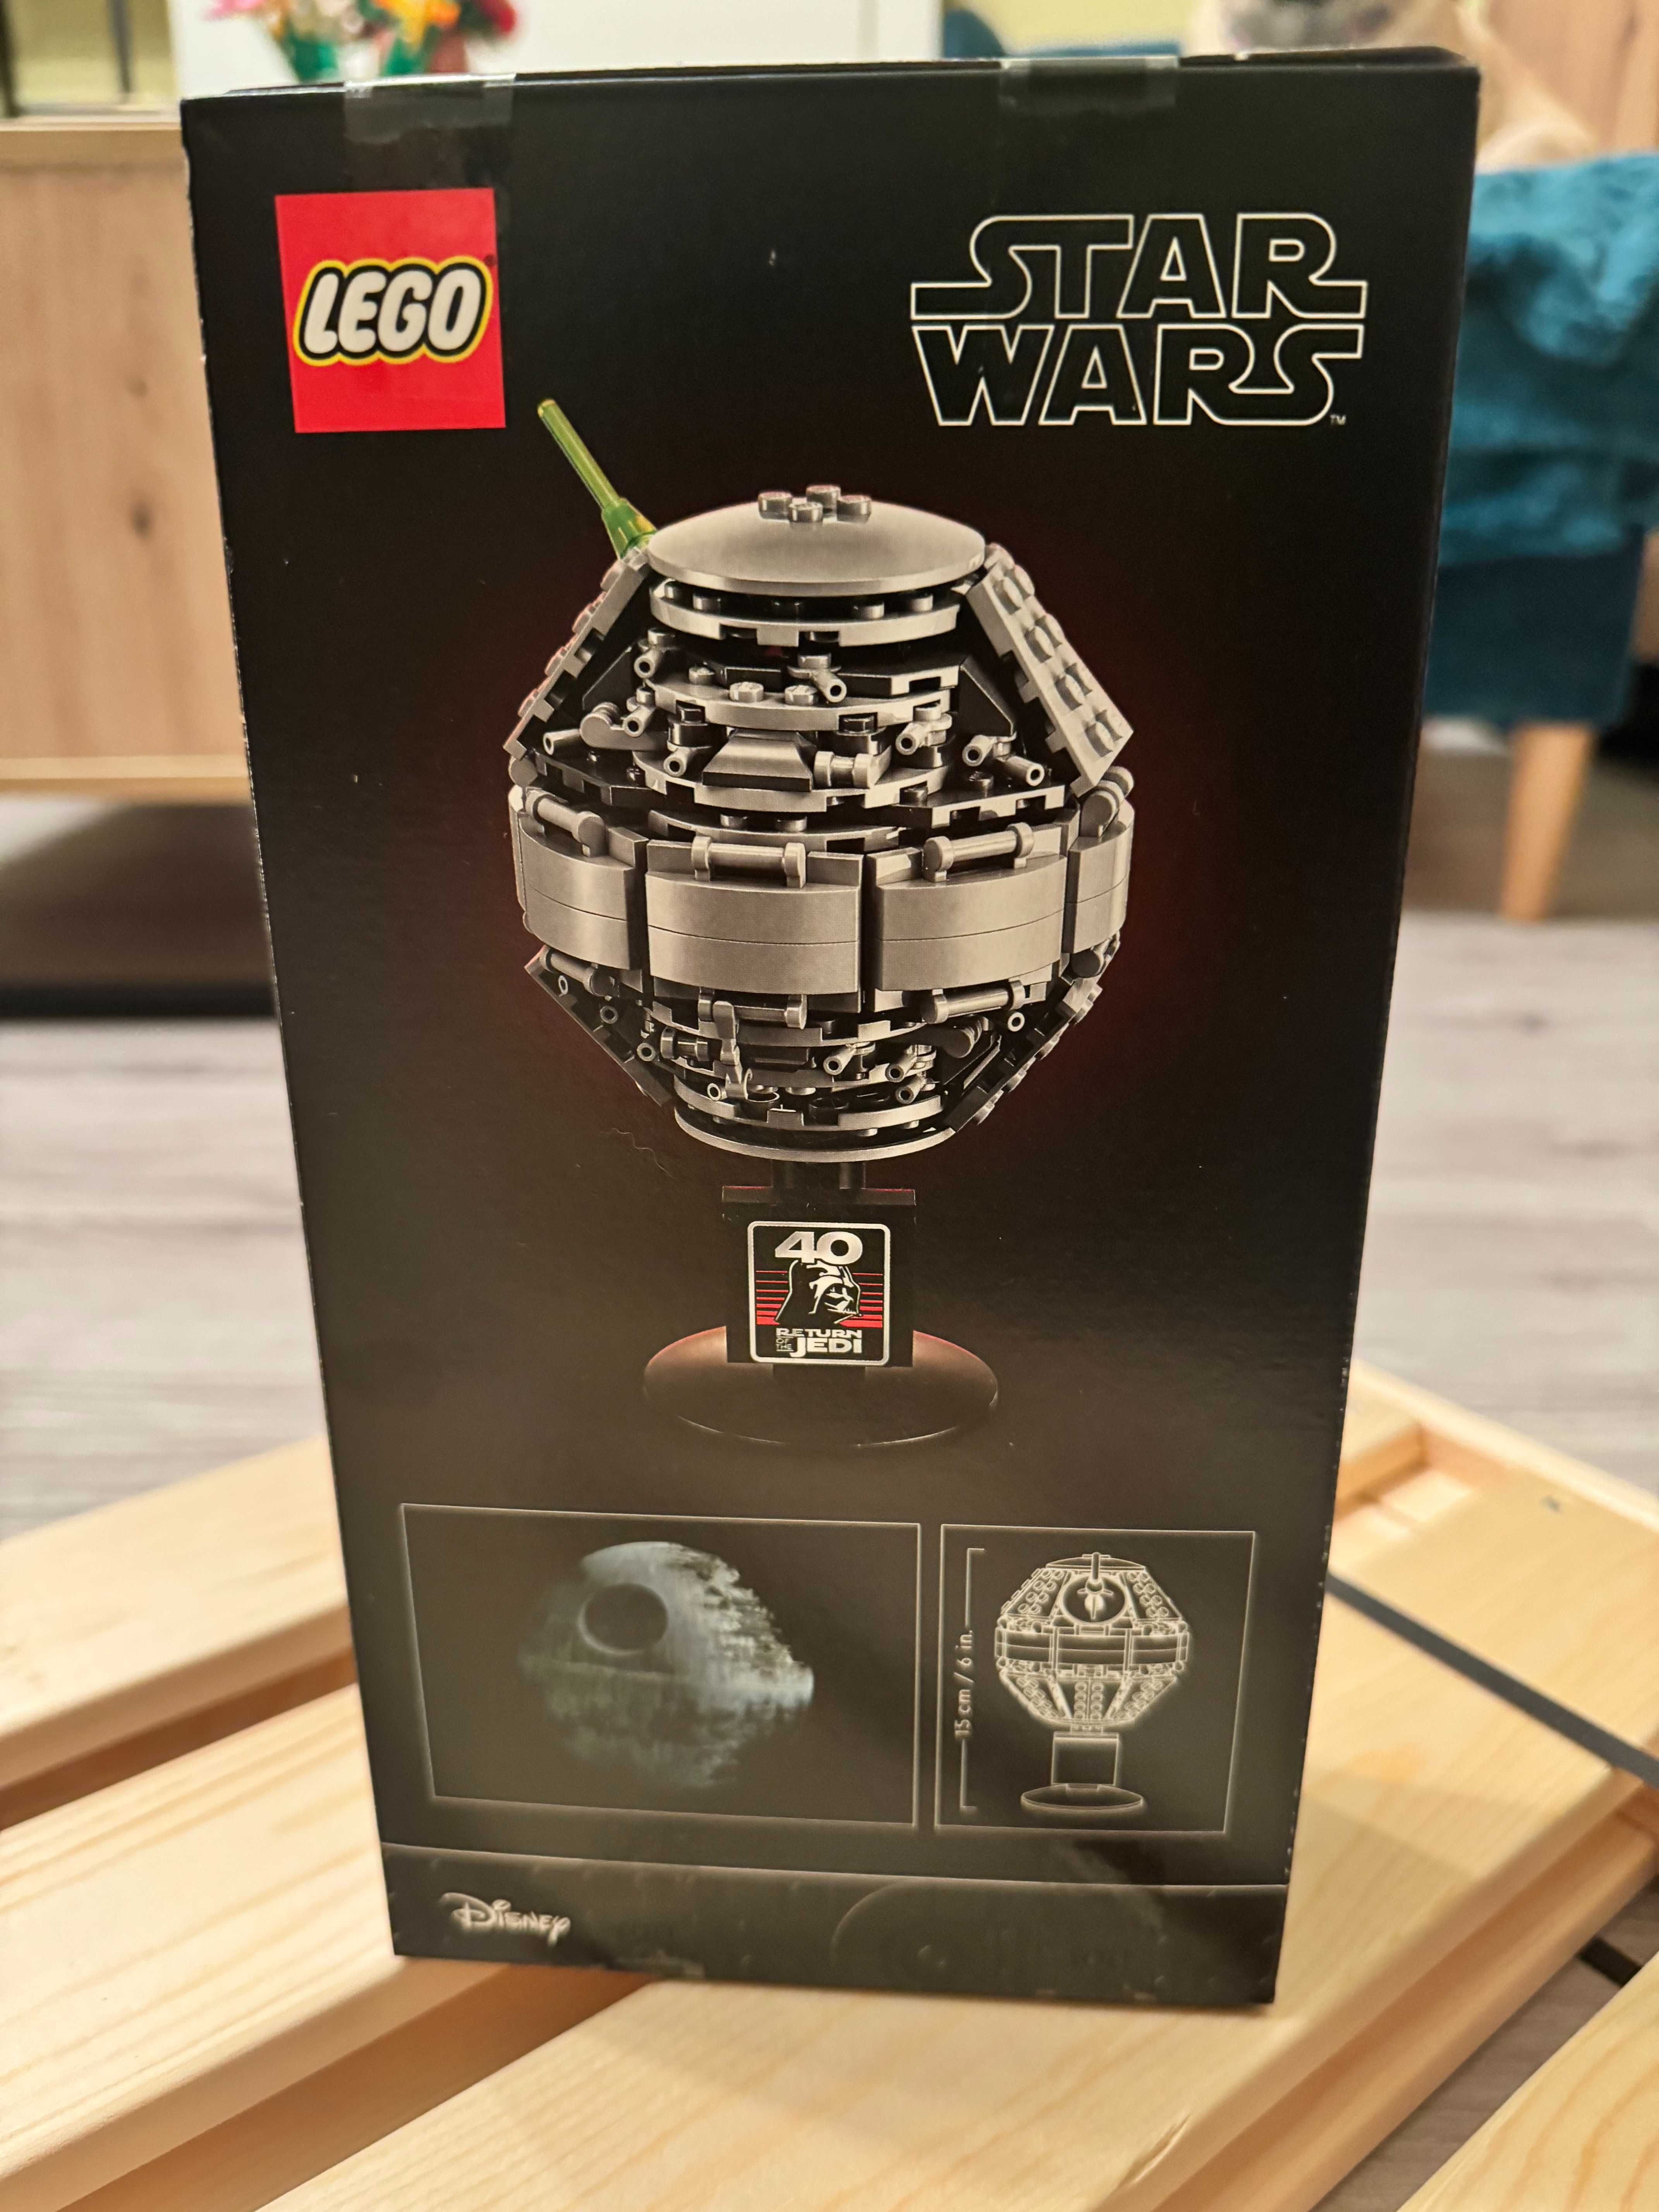 LEGO Star Wars 40591 Gwiazda Śmierci/Death Star II